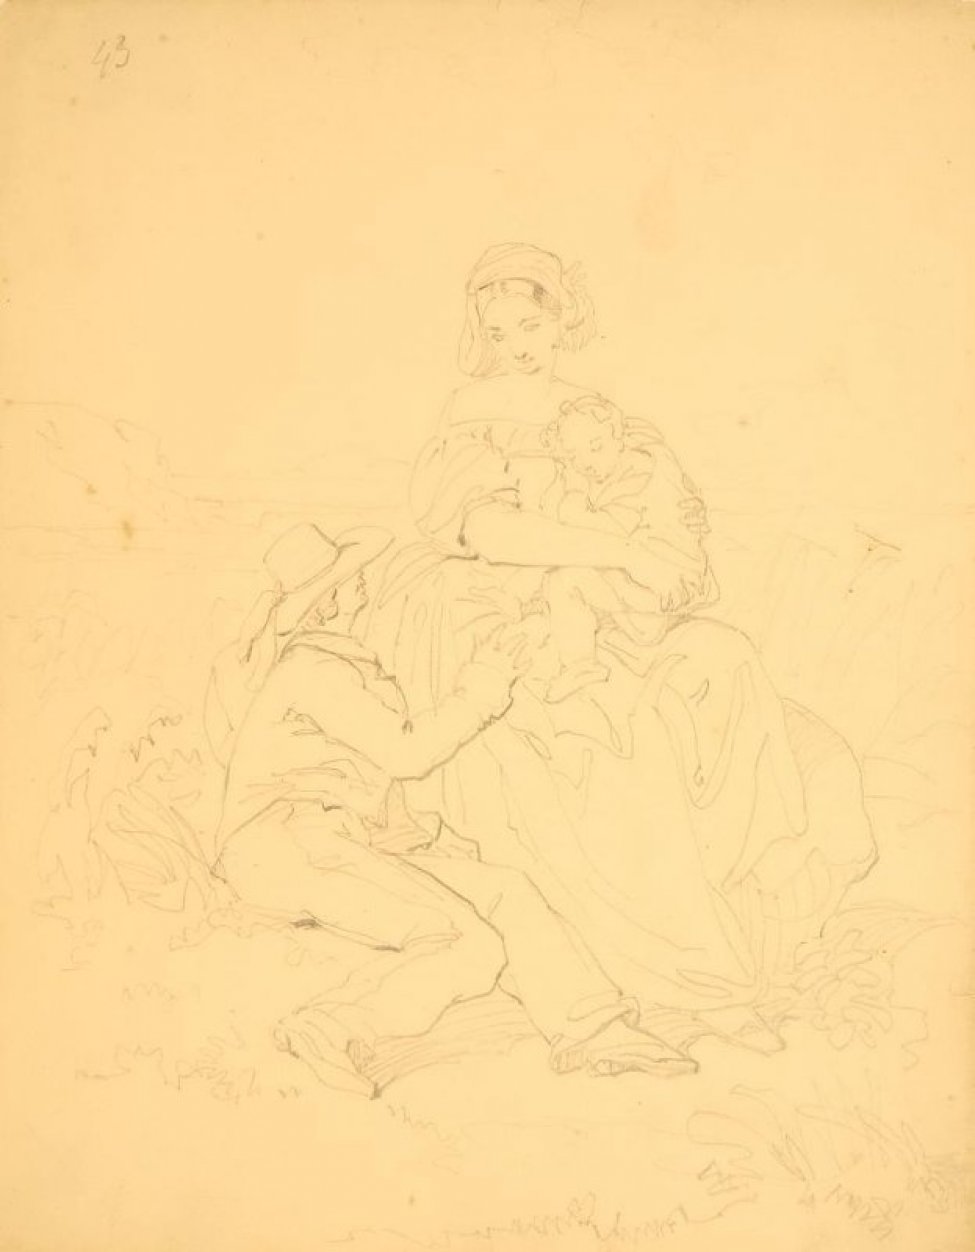 Изображена жанровая сценка. На пригорке сидит женщина с ребенком на руках. Слева от нее - сидит молодой человек в шляпе. Все в костюмах середины 19 века.